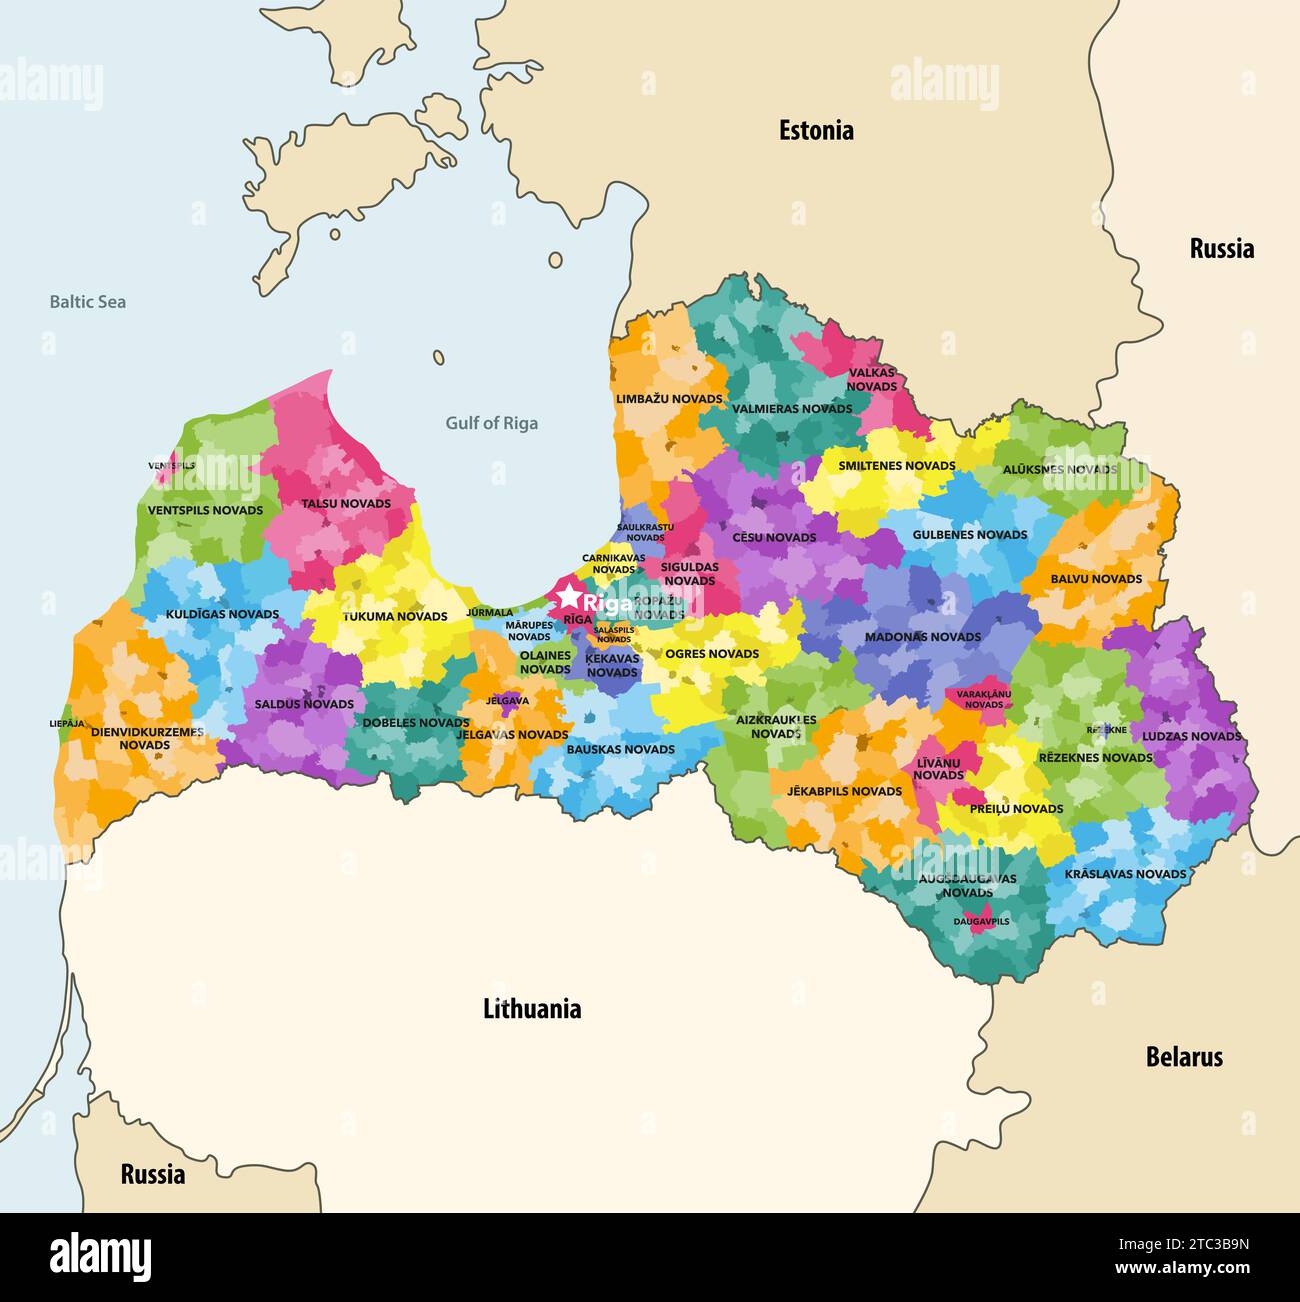 La Lettonia ha una mappa vettoriale dettagliata (che mostra le divisioni amministrative: Città, comuni, parrocchie e città) con i paesi vicini e. Illustrazione Vettoriale